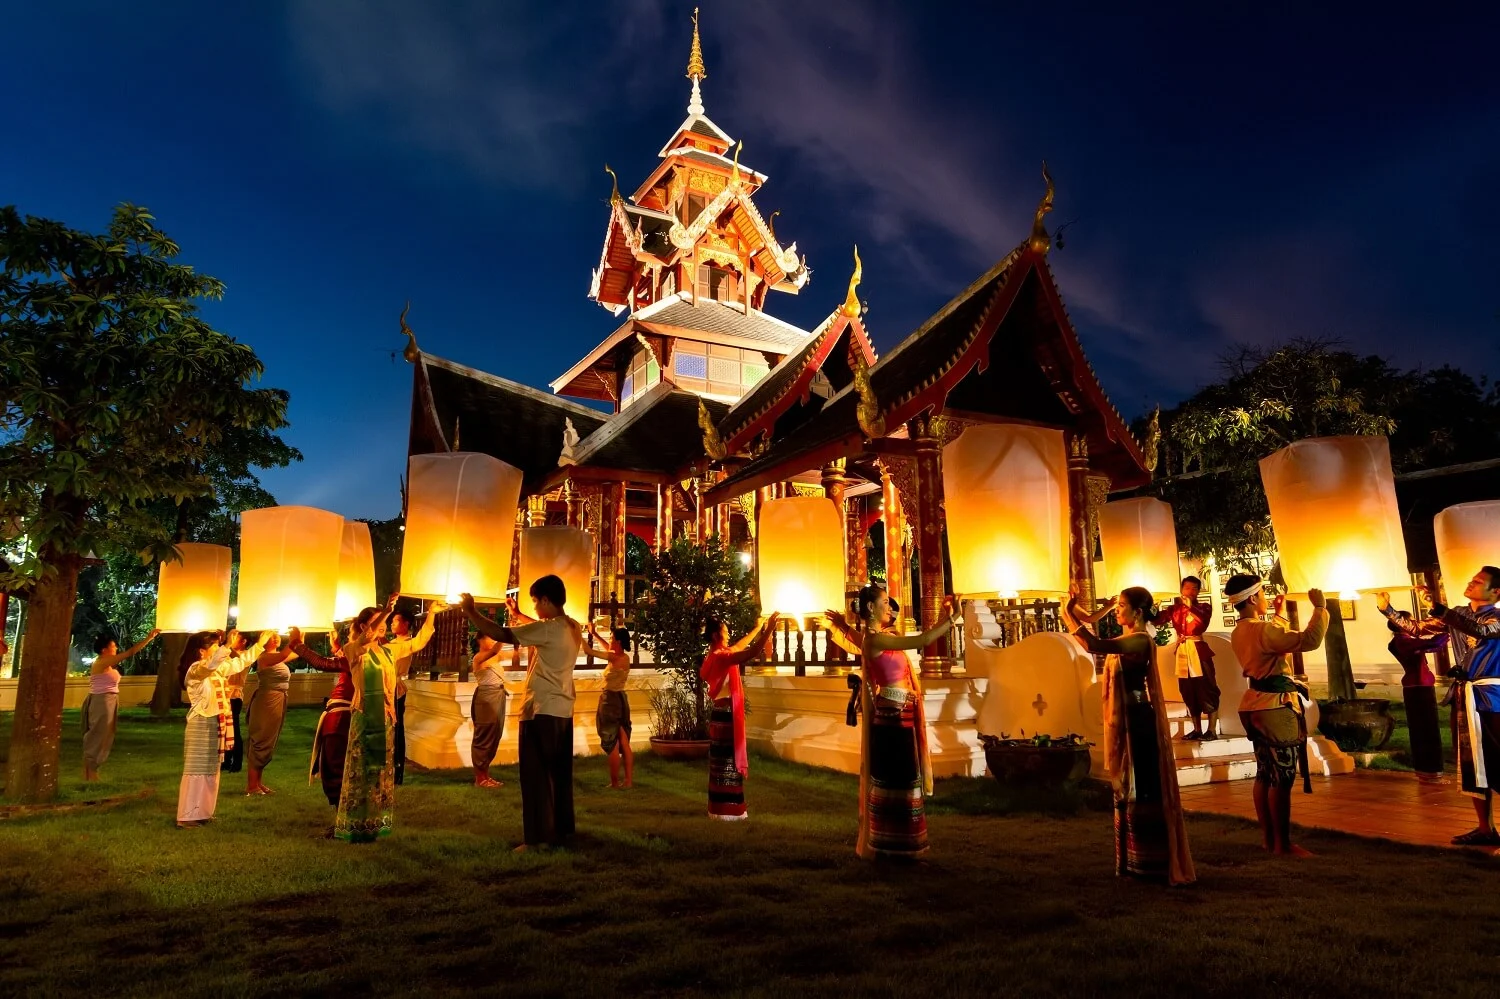 Kinh nghiệm tham gia lễ hội thả đèn Chiang Mai chi tiết